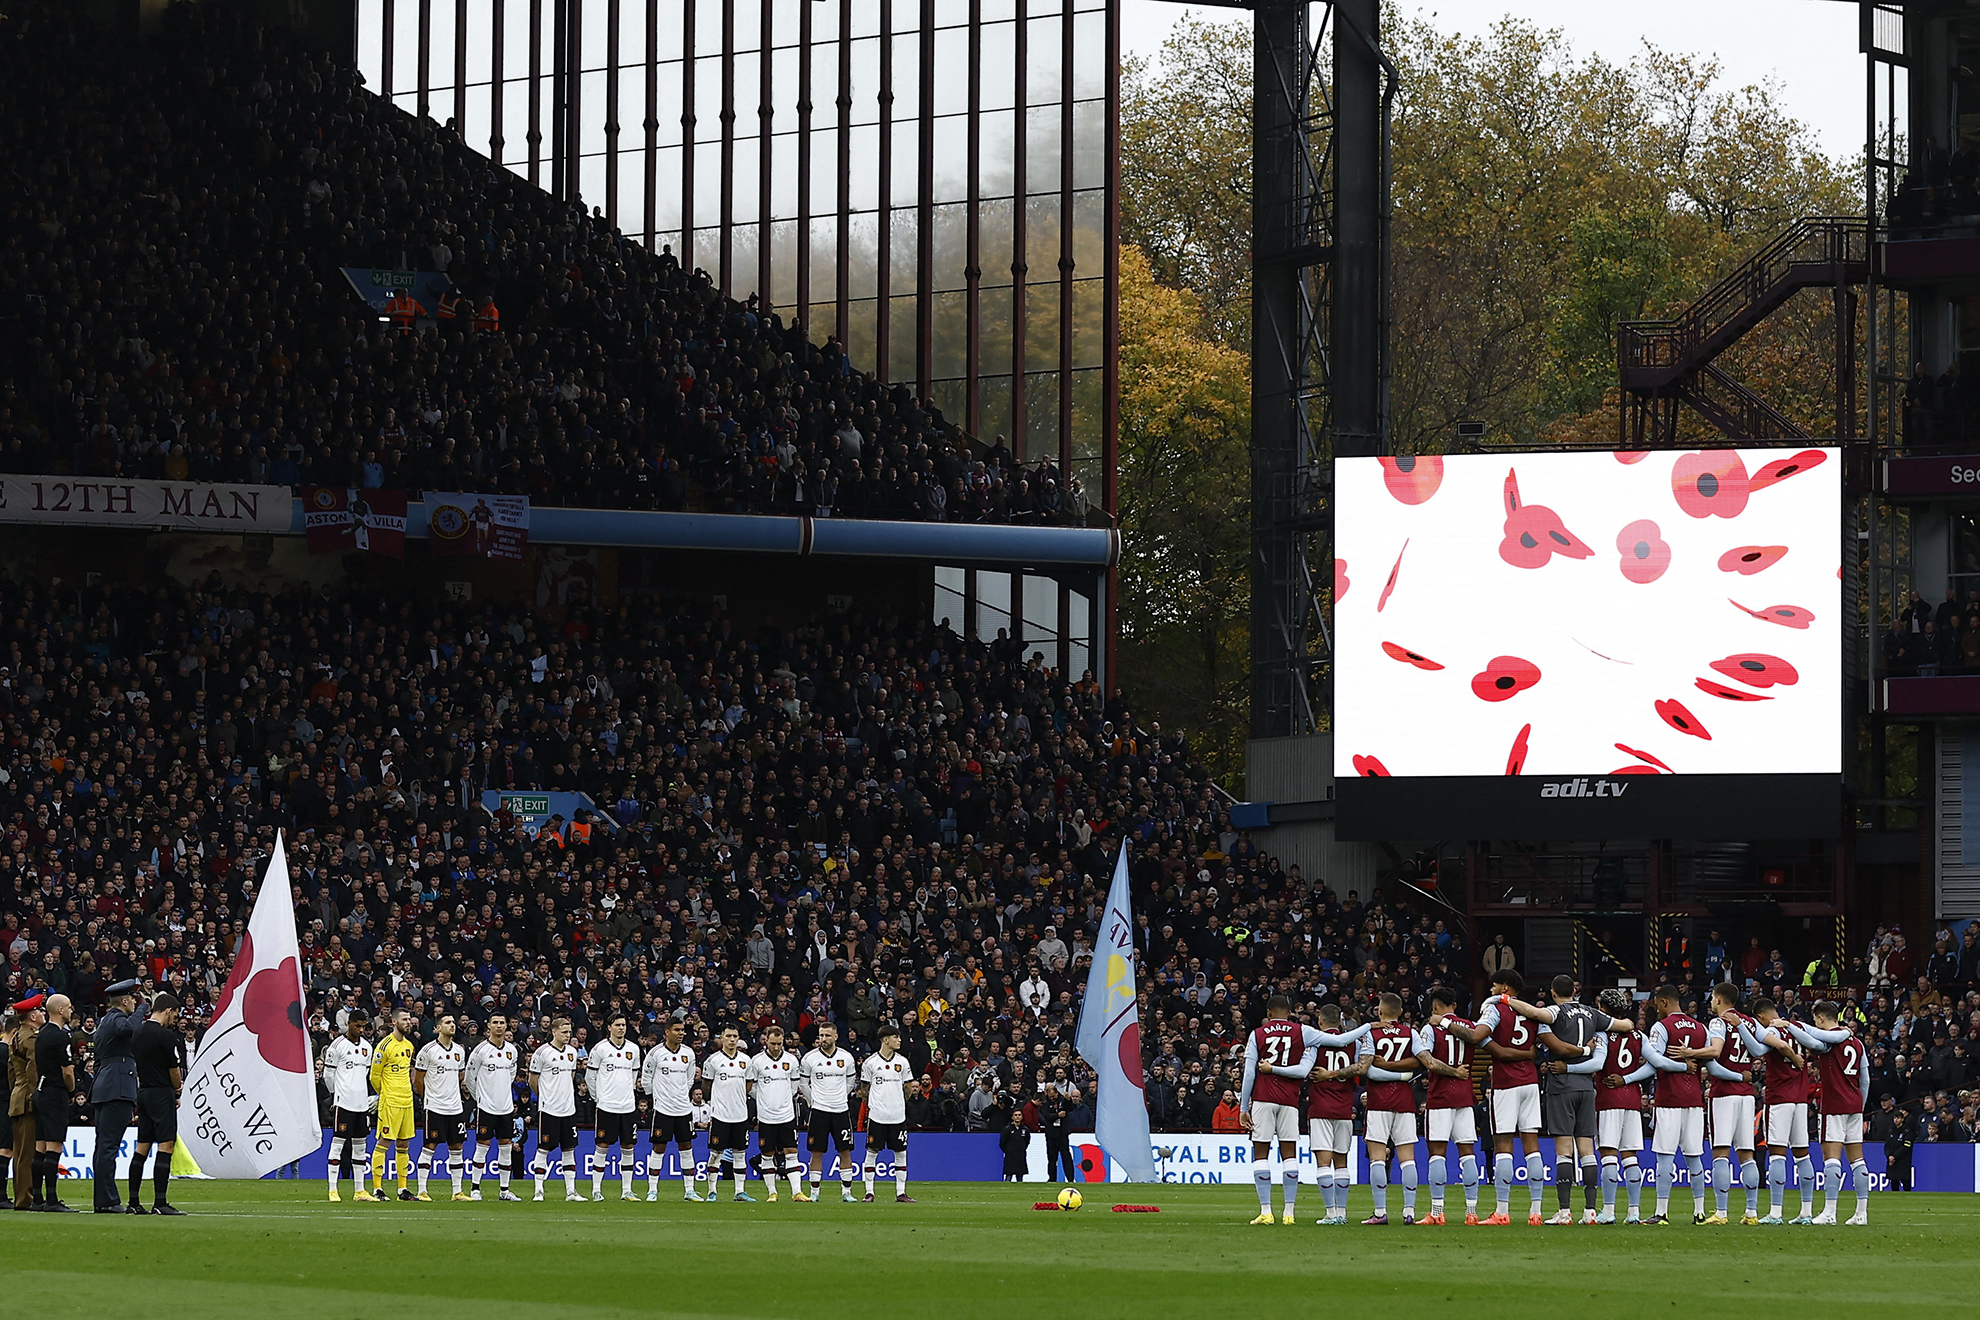 Aston Villa vs Manchester United, en vivo juego de la jornada 15 de la Premier League de Inglaterra